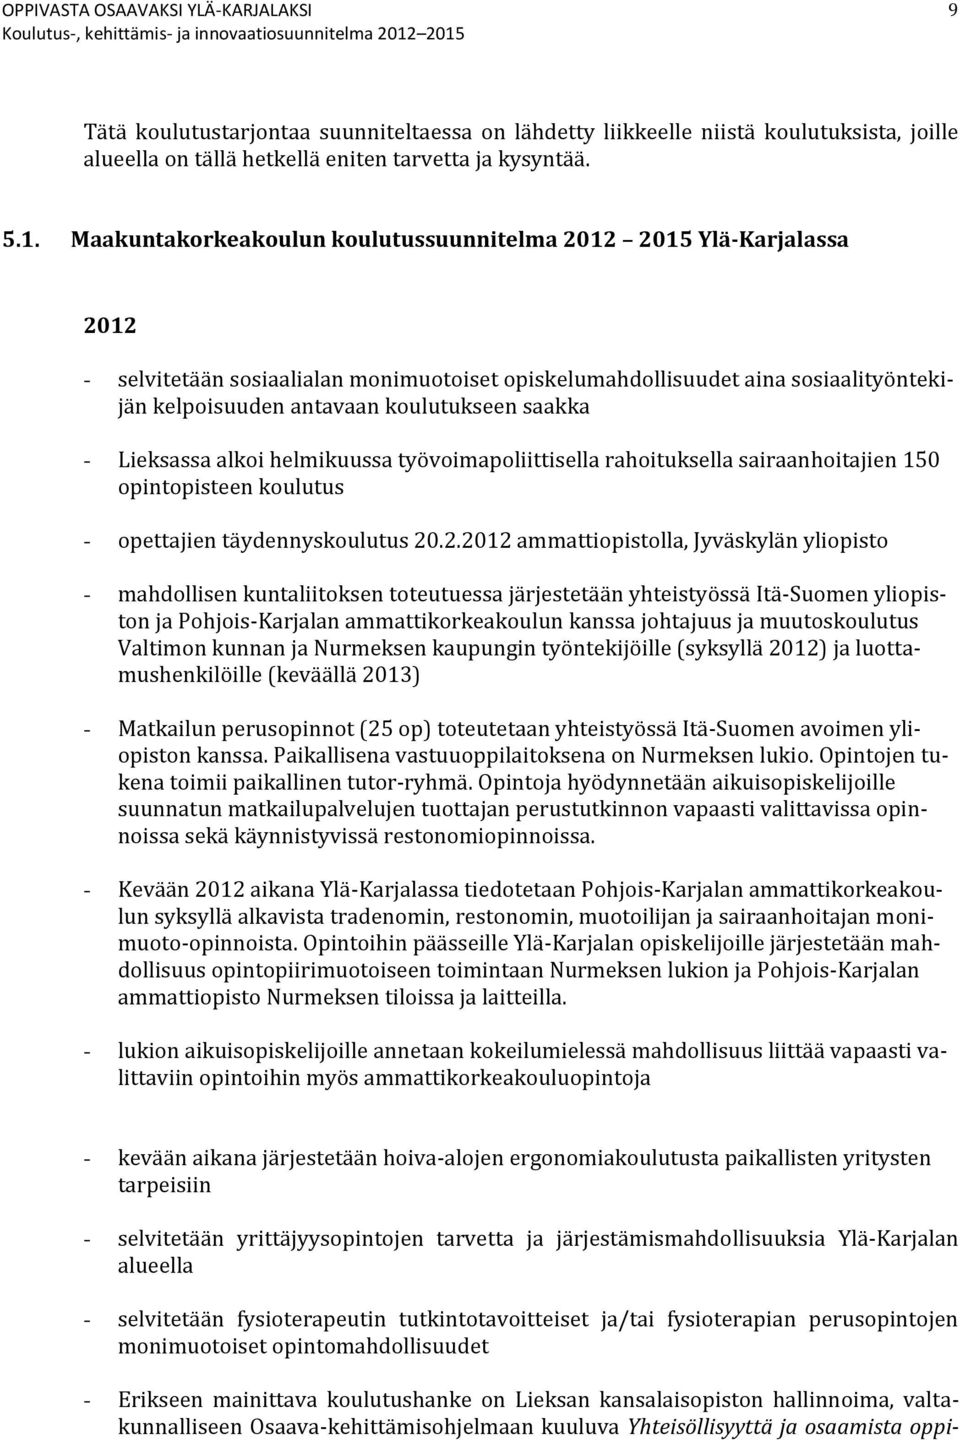 saakka - Lieksassa alkoi helmikuussa työvoimapoliittisella rahoituksella sairaanhoitajien 150 opintopisteen koulutus - opettajien täydennyskoulutus 20